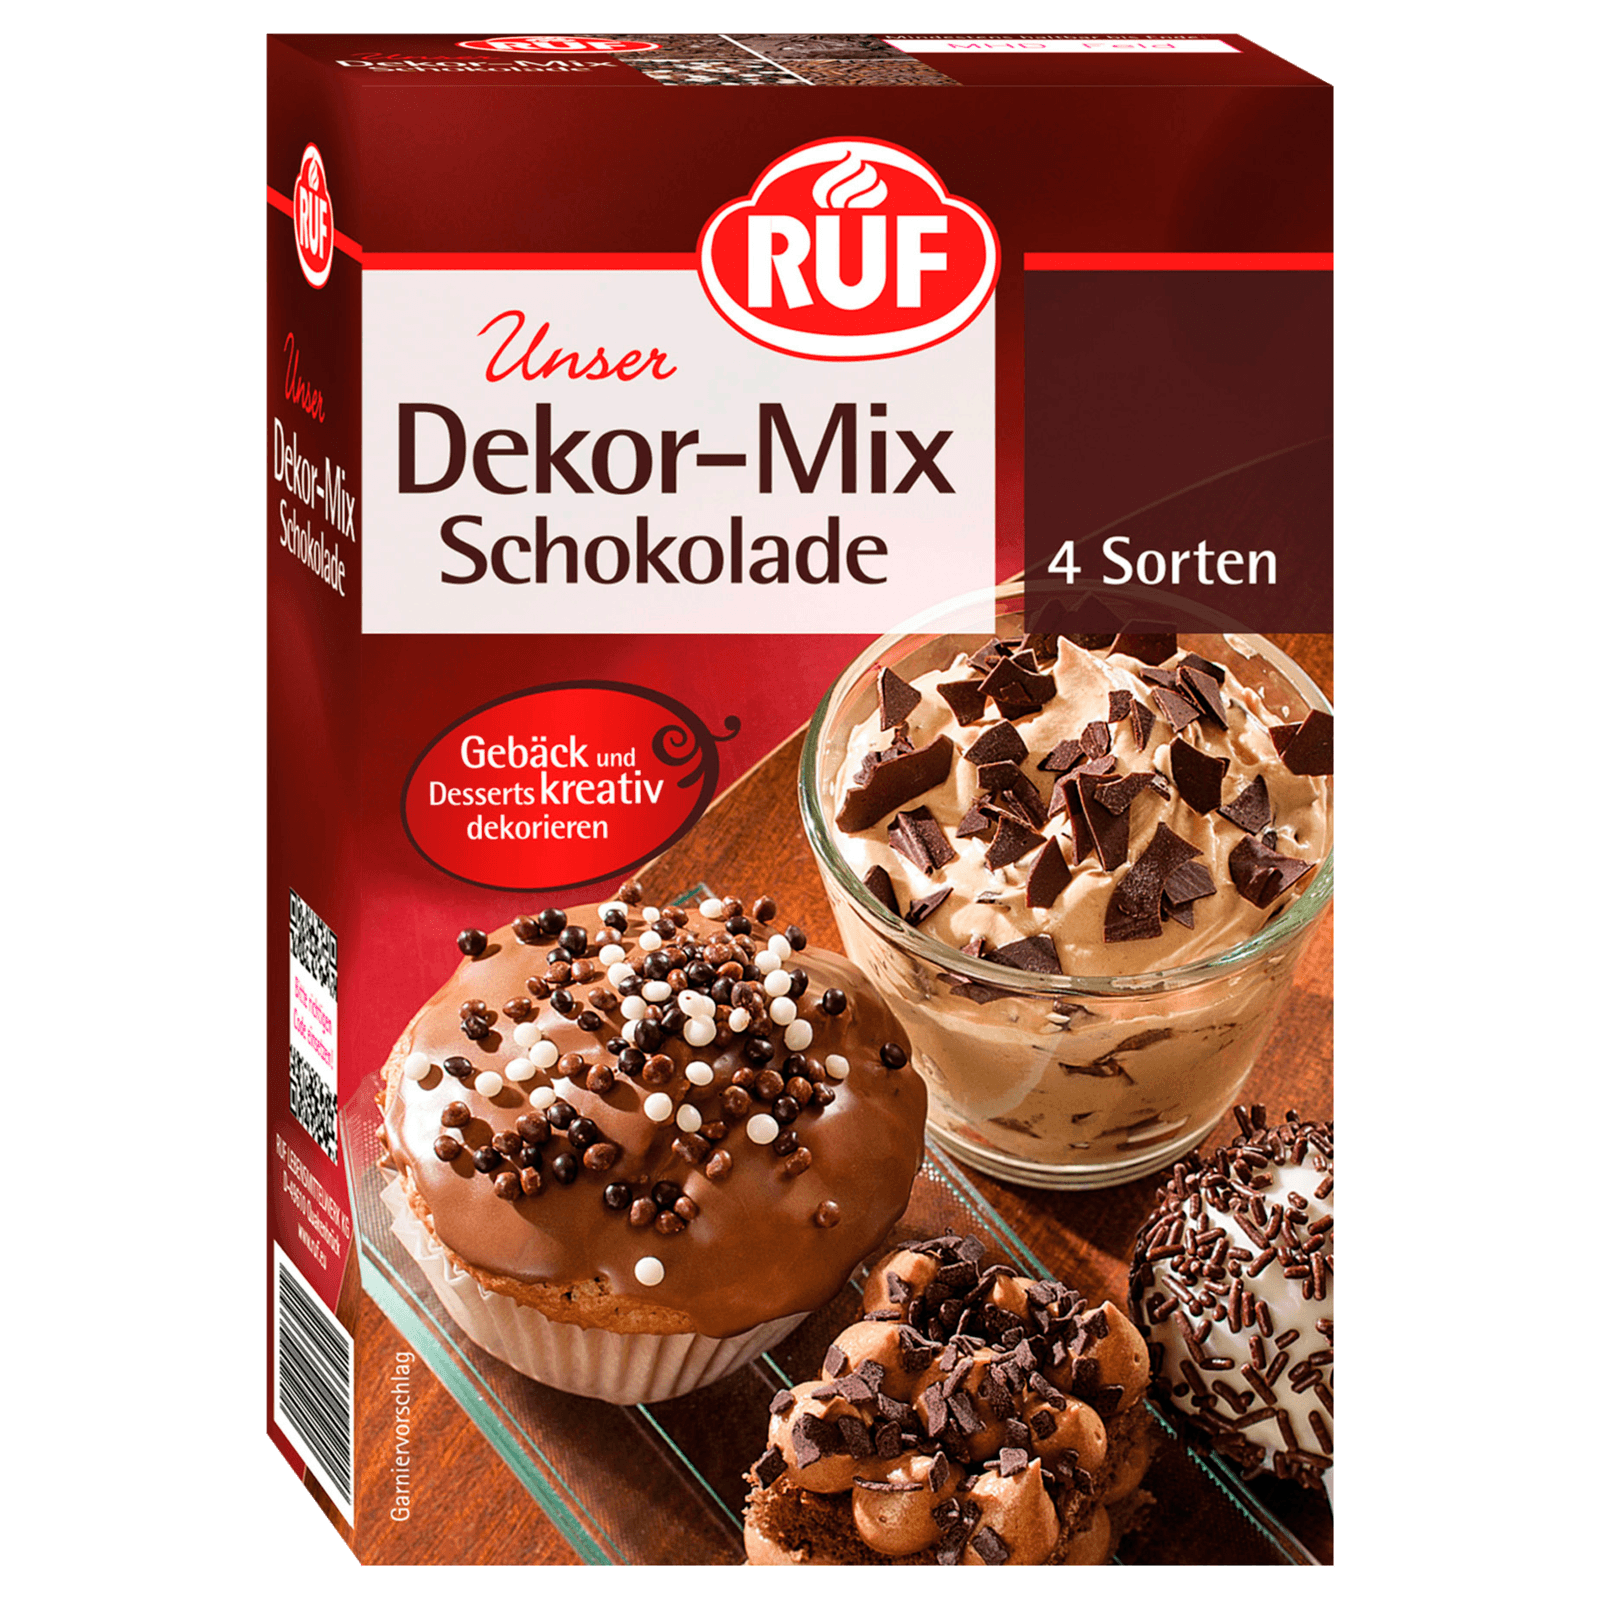 Ruf Dekor-Mix Schokolade 160g  für 2.99 EUR